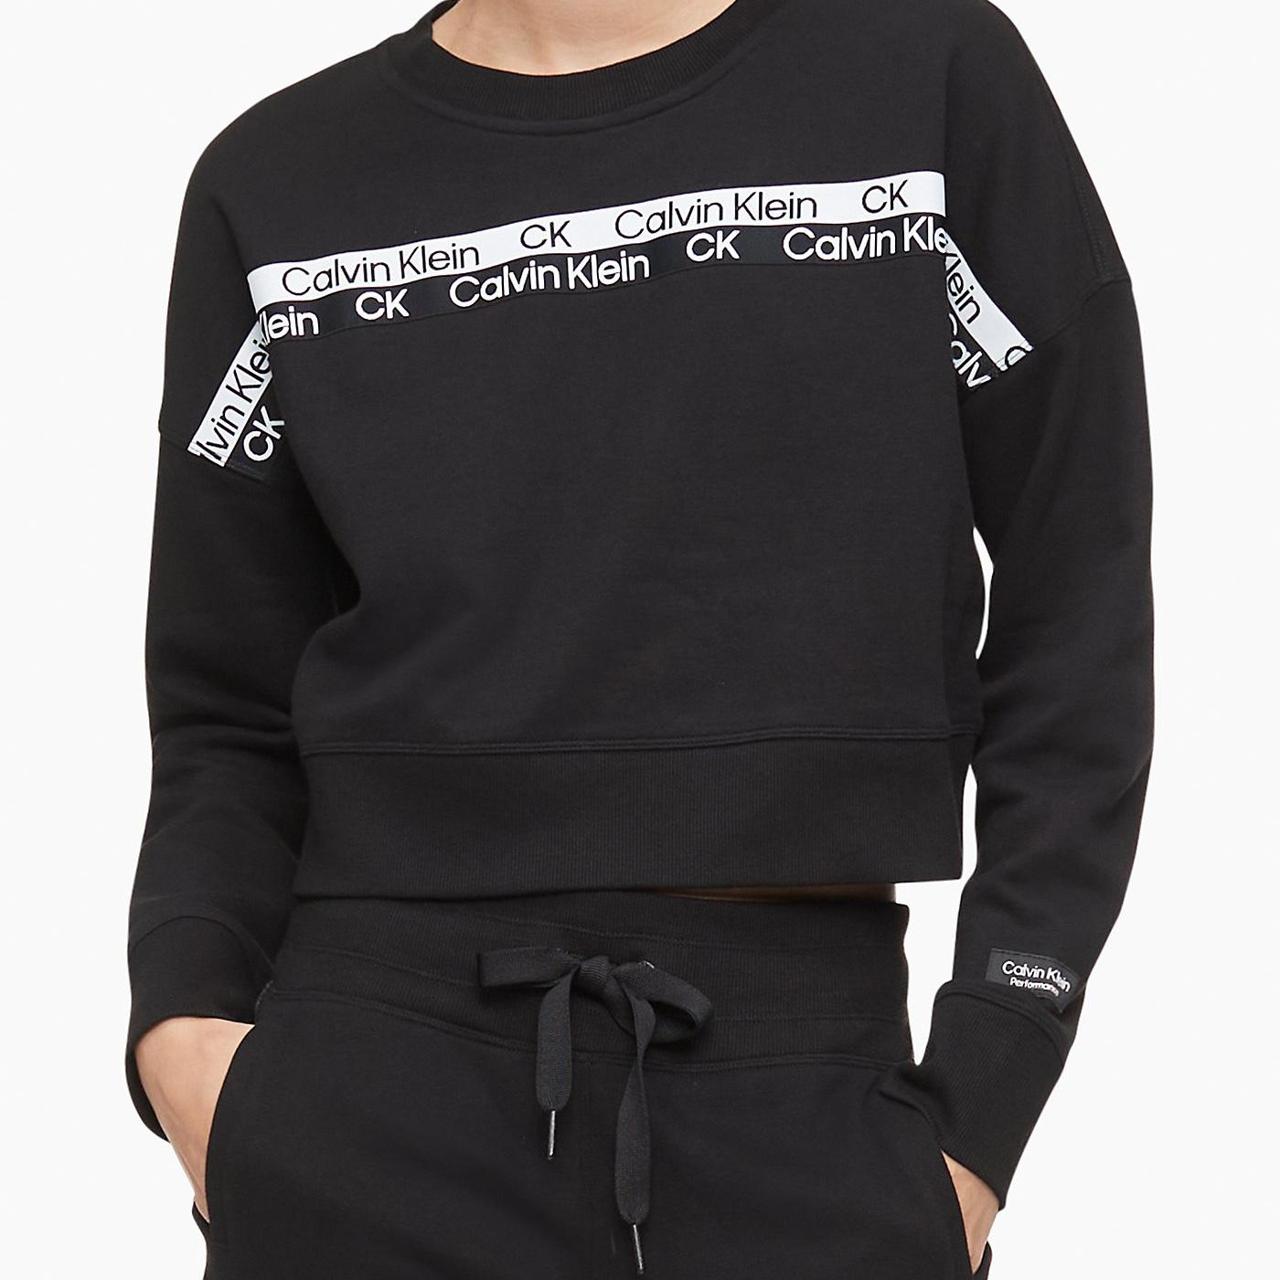 CK Calvin Klein Women's Black and White Sweatshirt